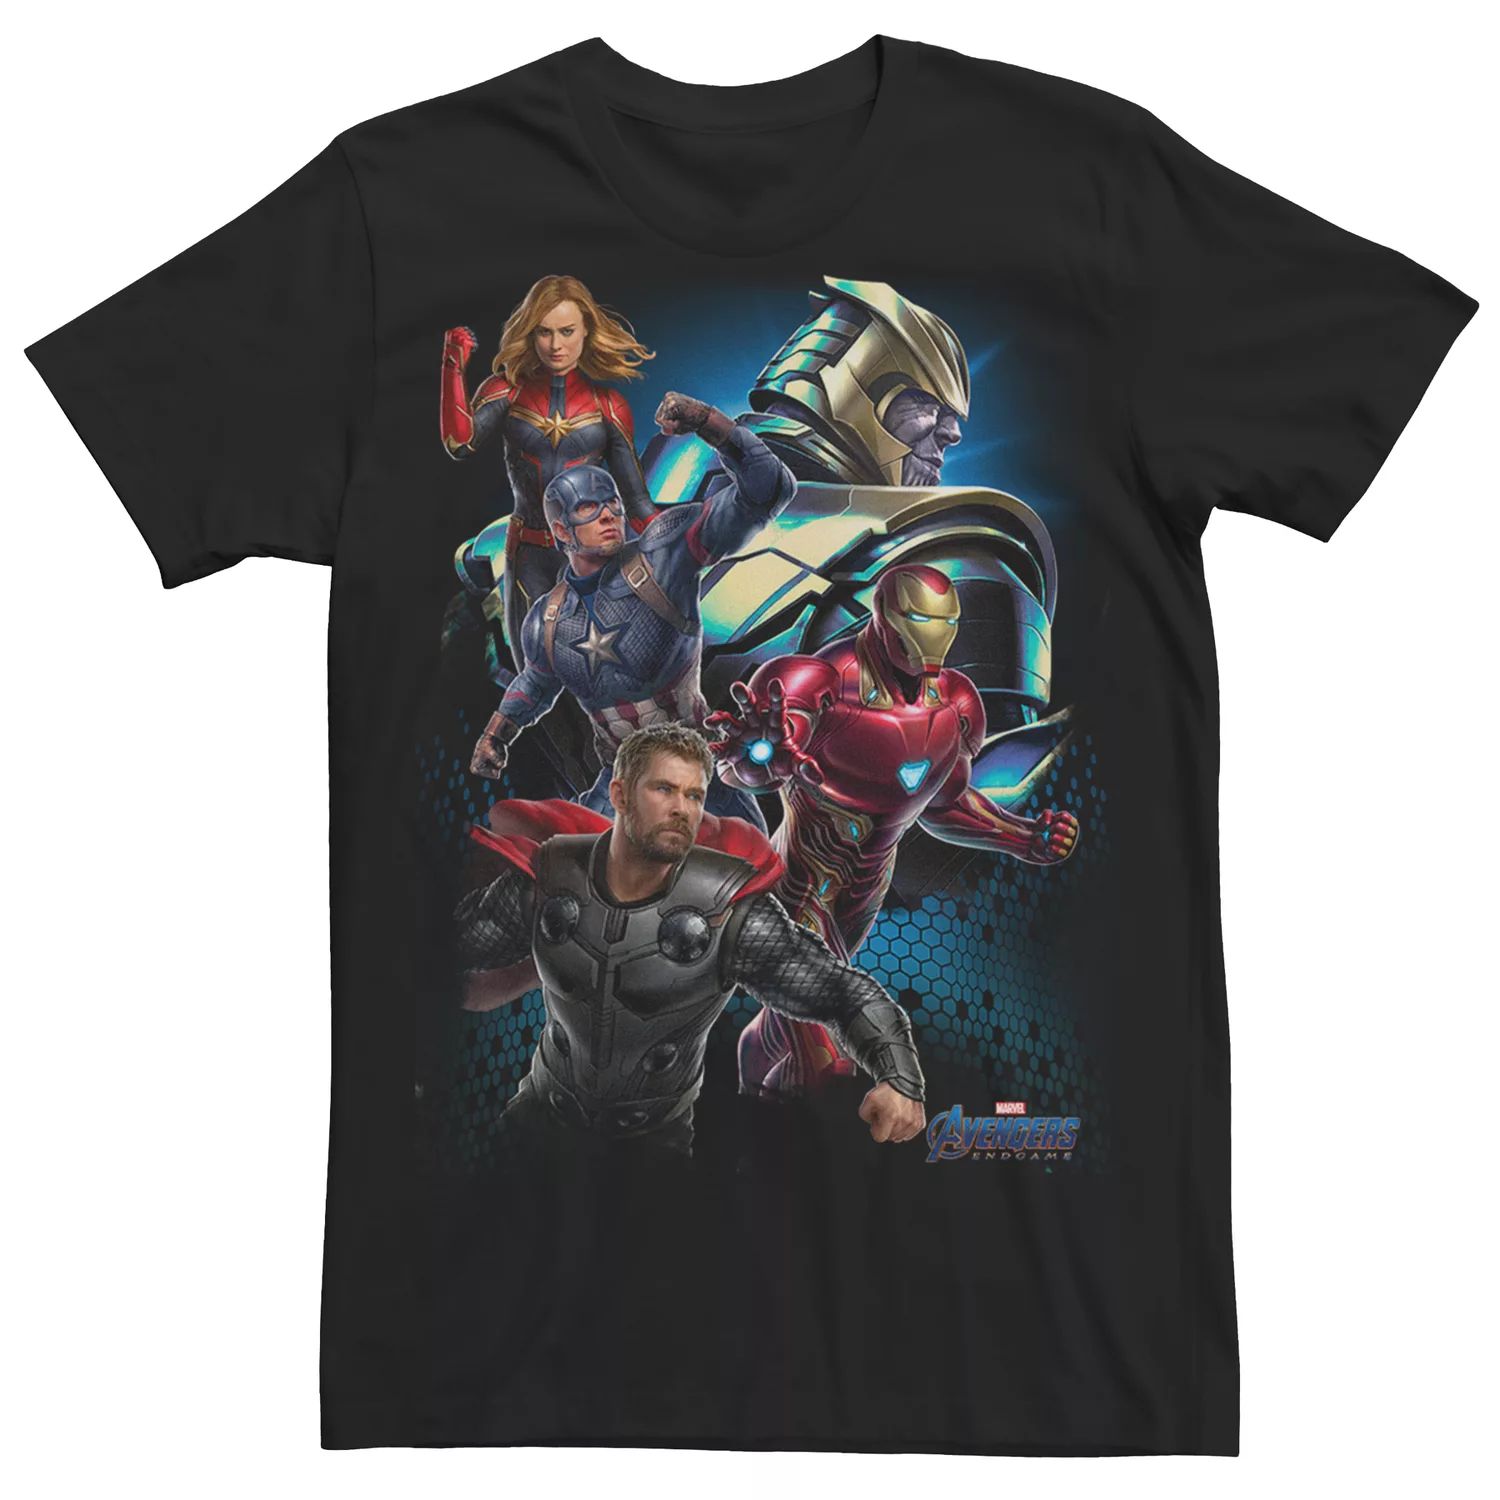 Мужская футболка Marvel Avengers Thanos Enemies